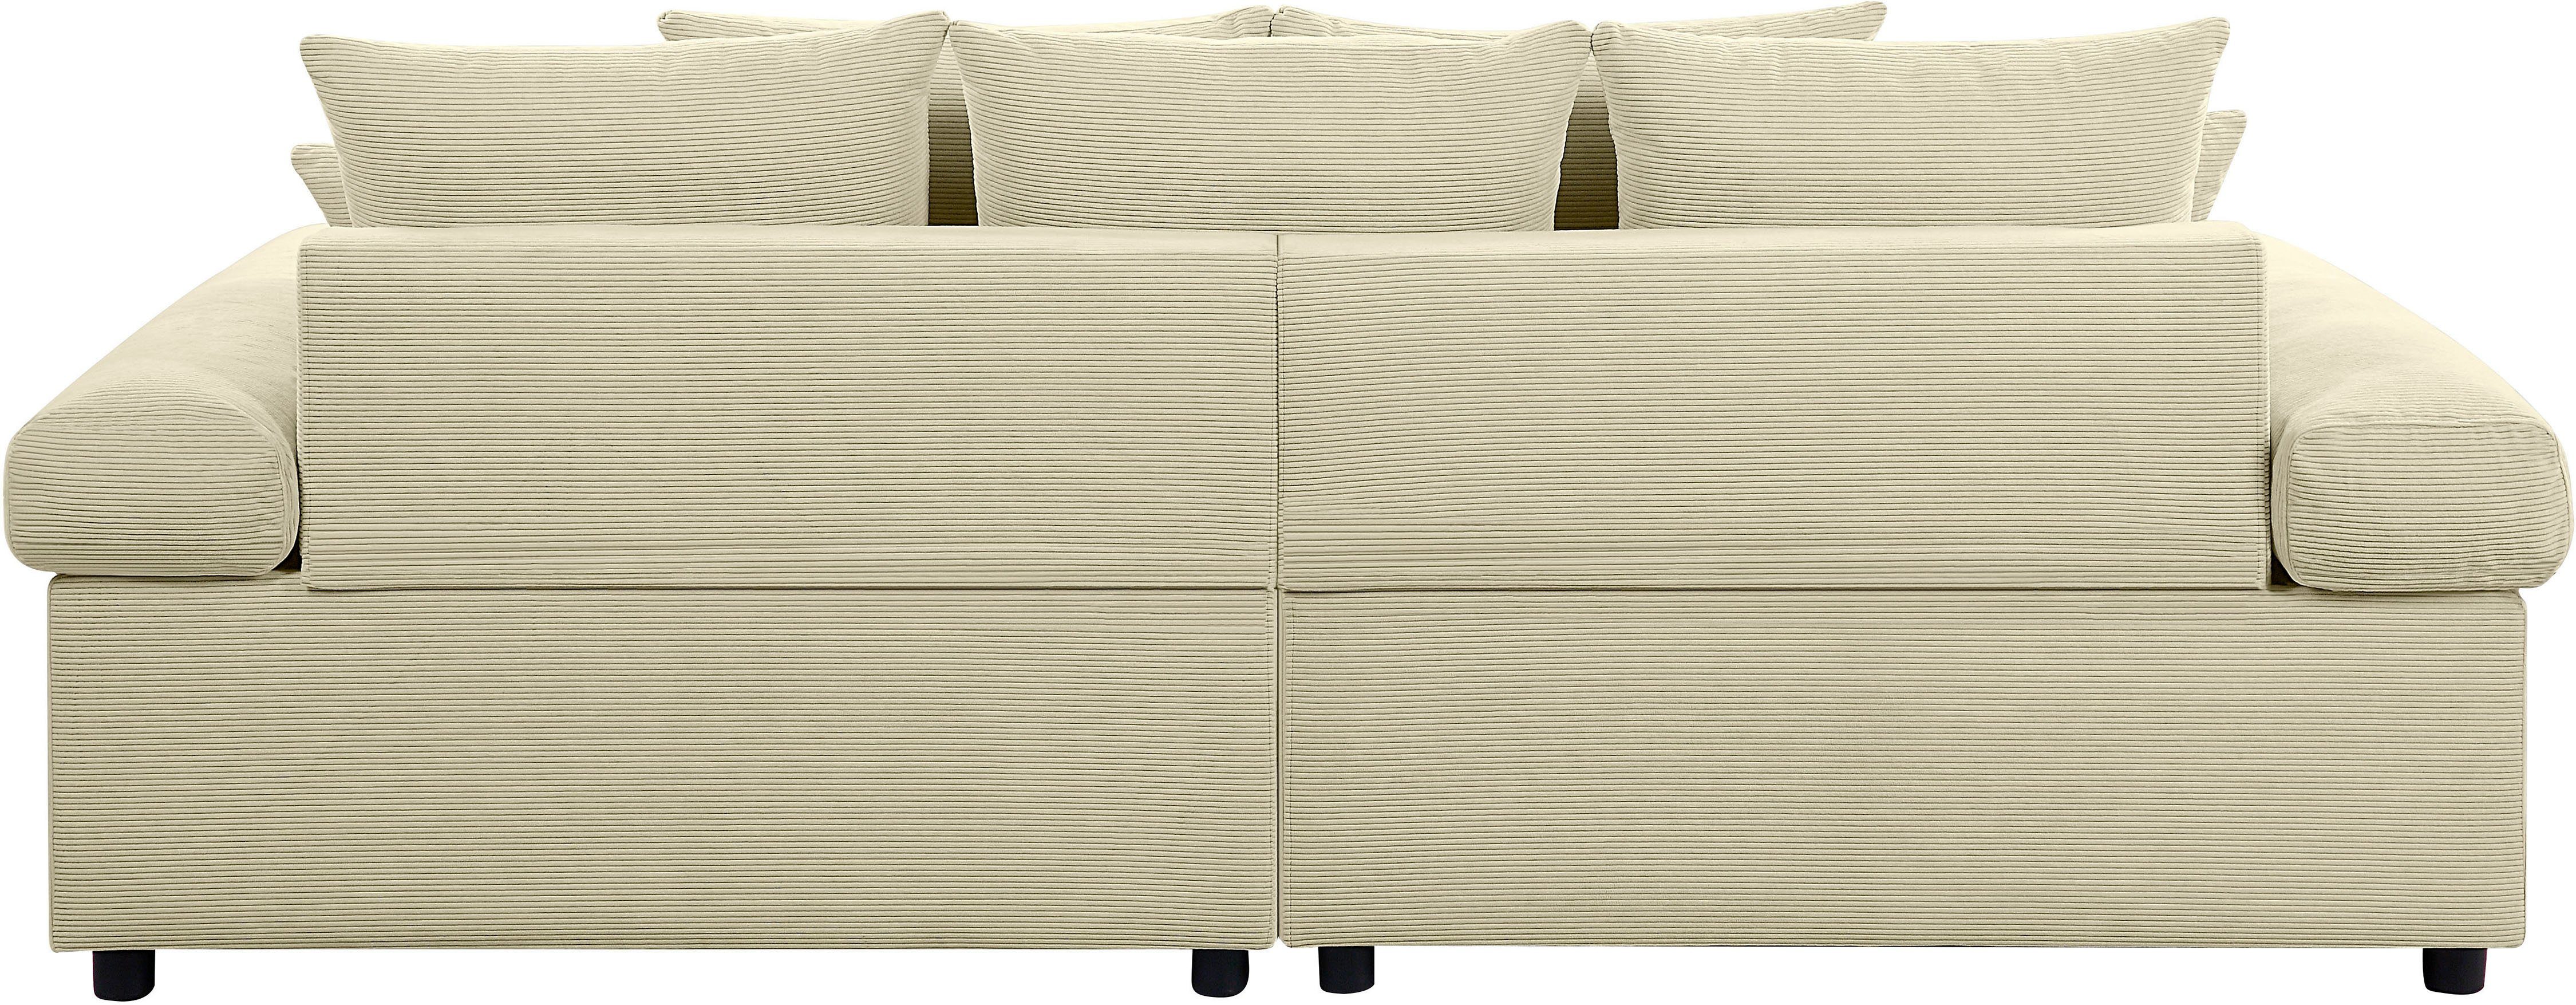 Cord-Bezug, Big-Sofa im home collection ATLANTIC mit Bjoern, stellbar XXL-Sitzfläche, creme mit Raum Federkern, frei